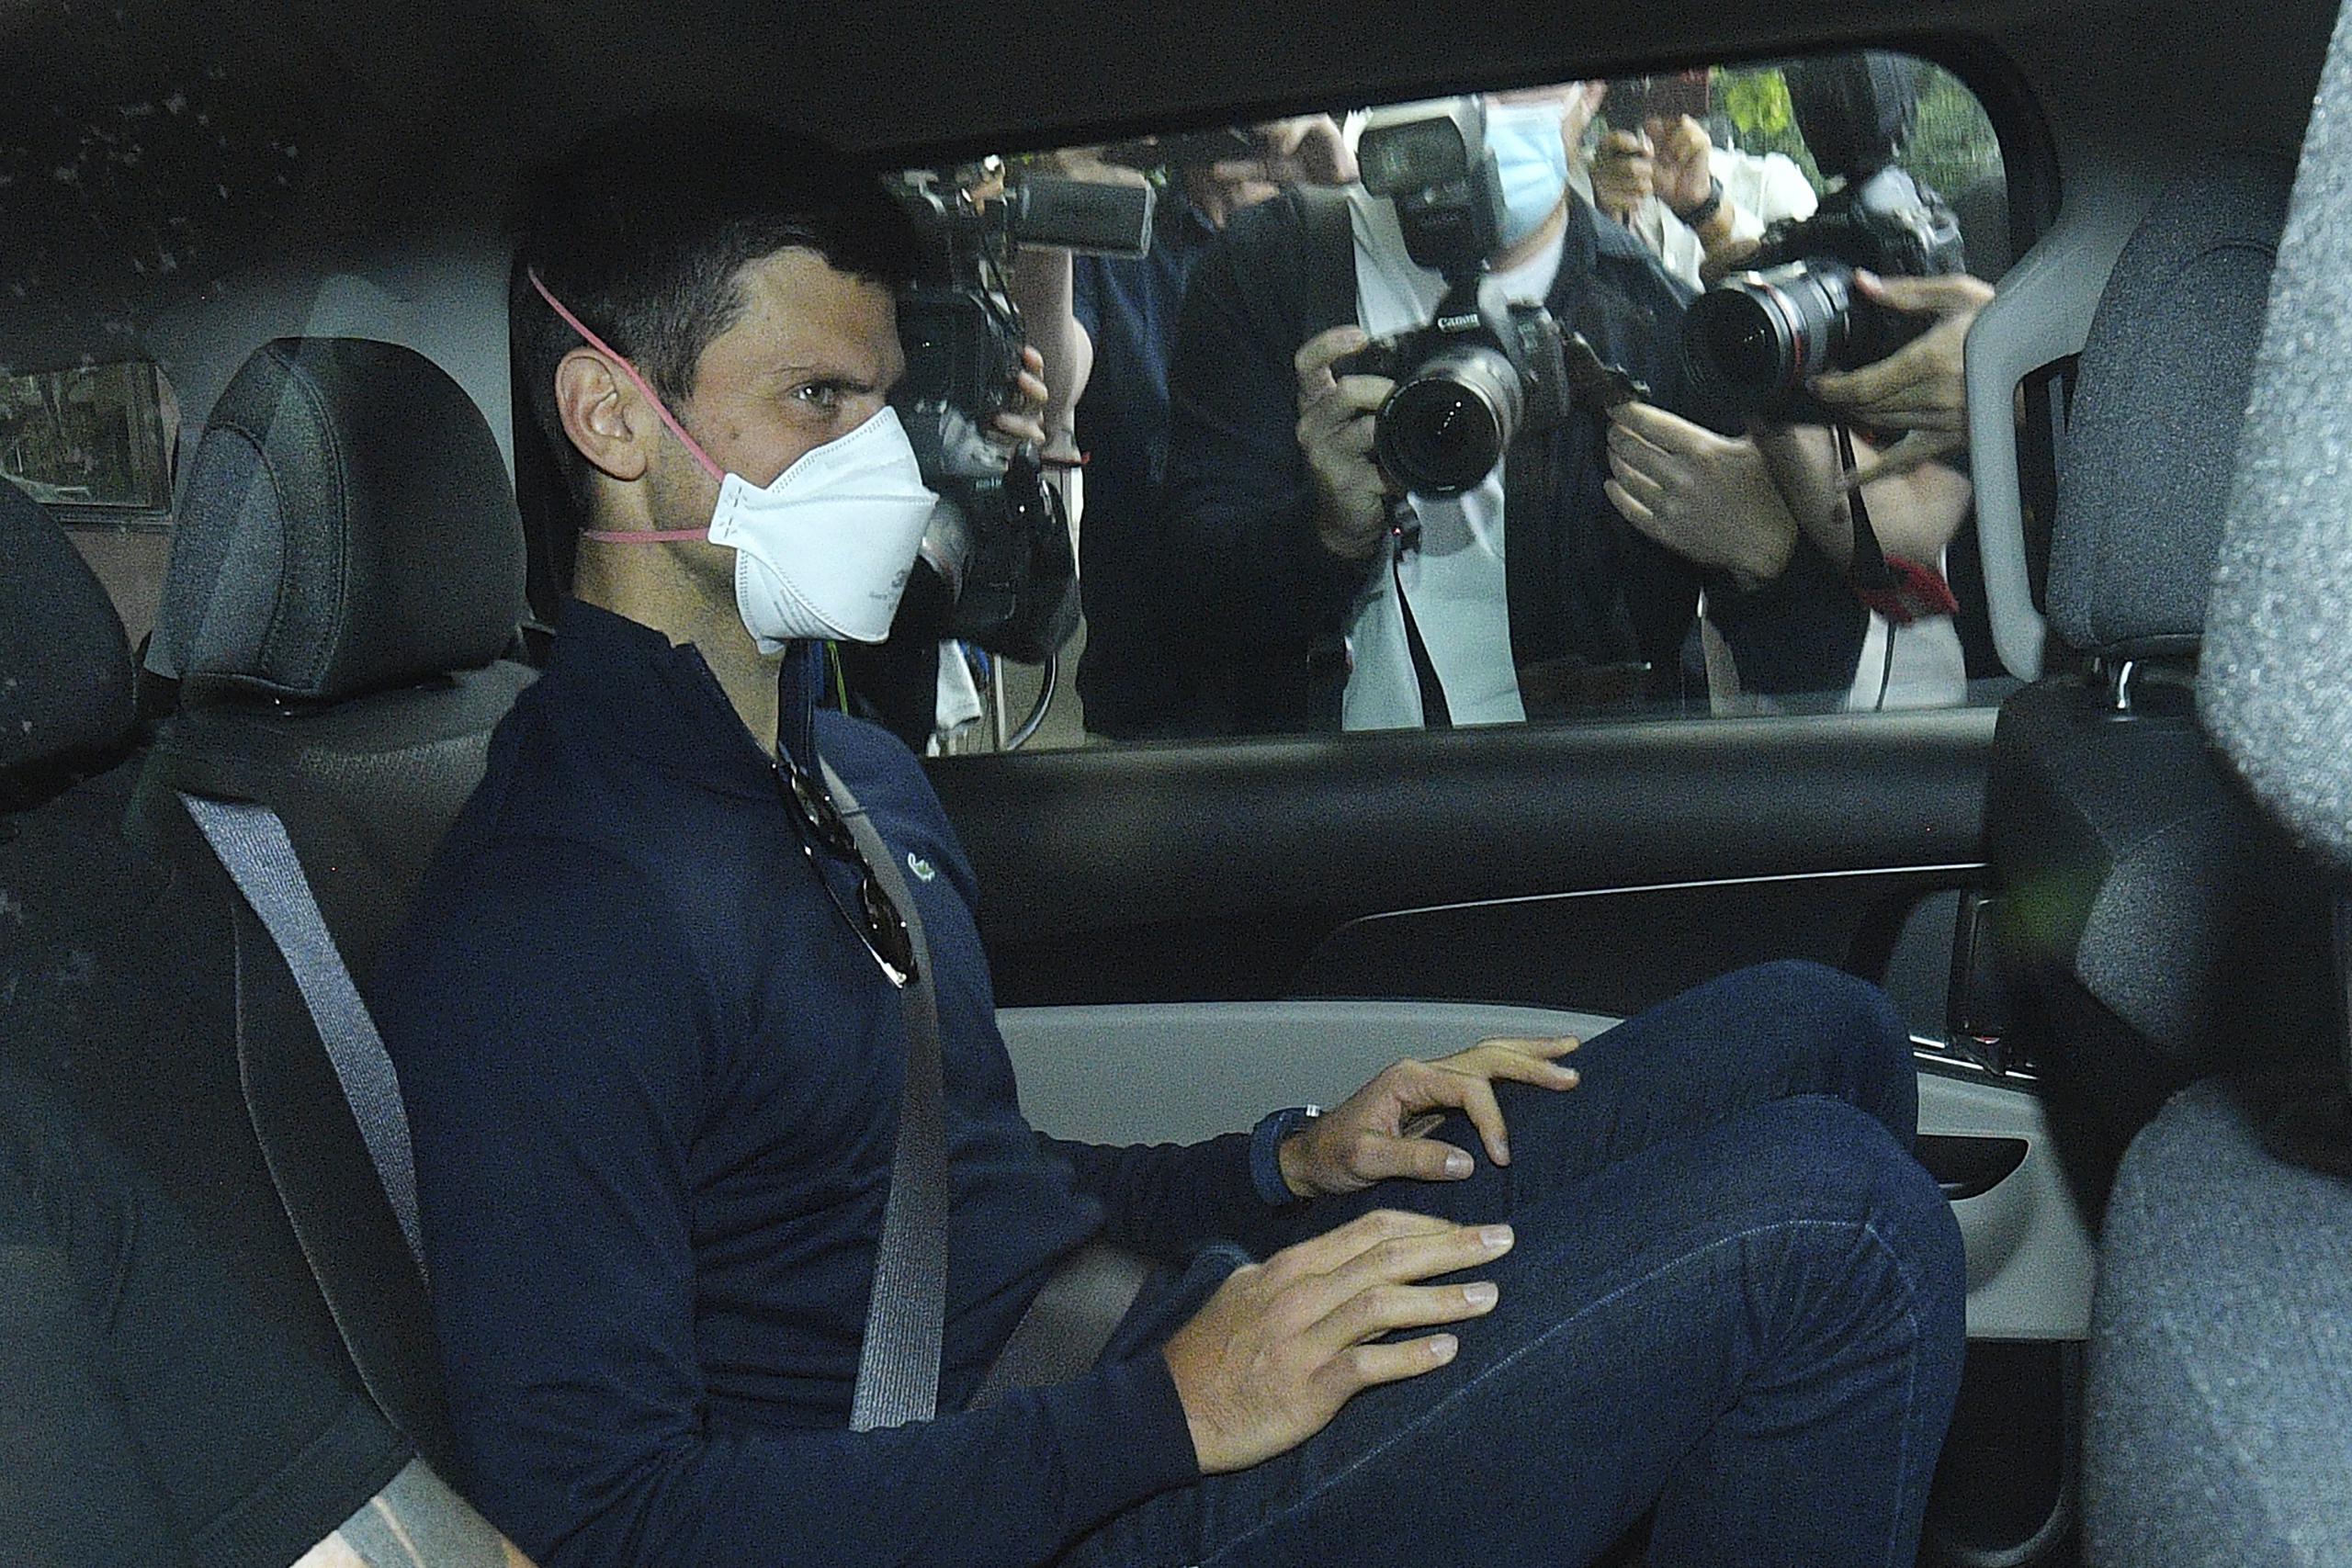 El tenista serbio Novak Djokovic es retirado en un vehículo de un centro de detención del gobierno, antes de asistir a una audiencia judicial en la oficina de sus abogados.